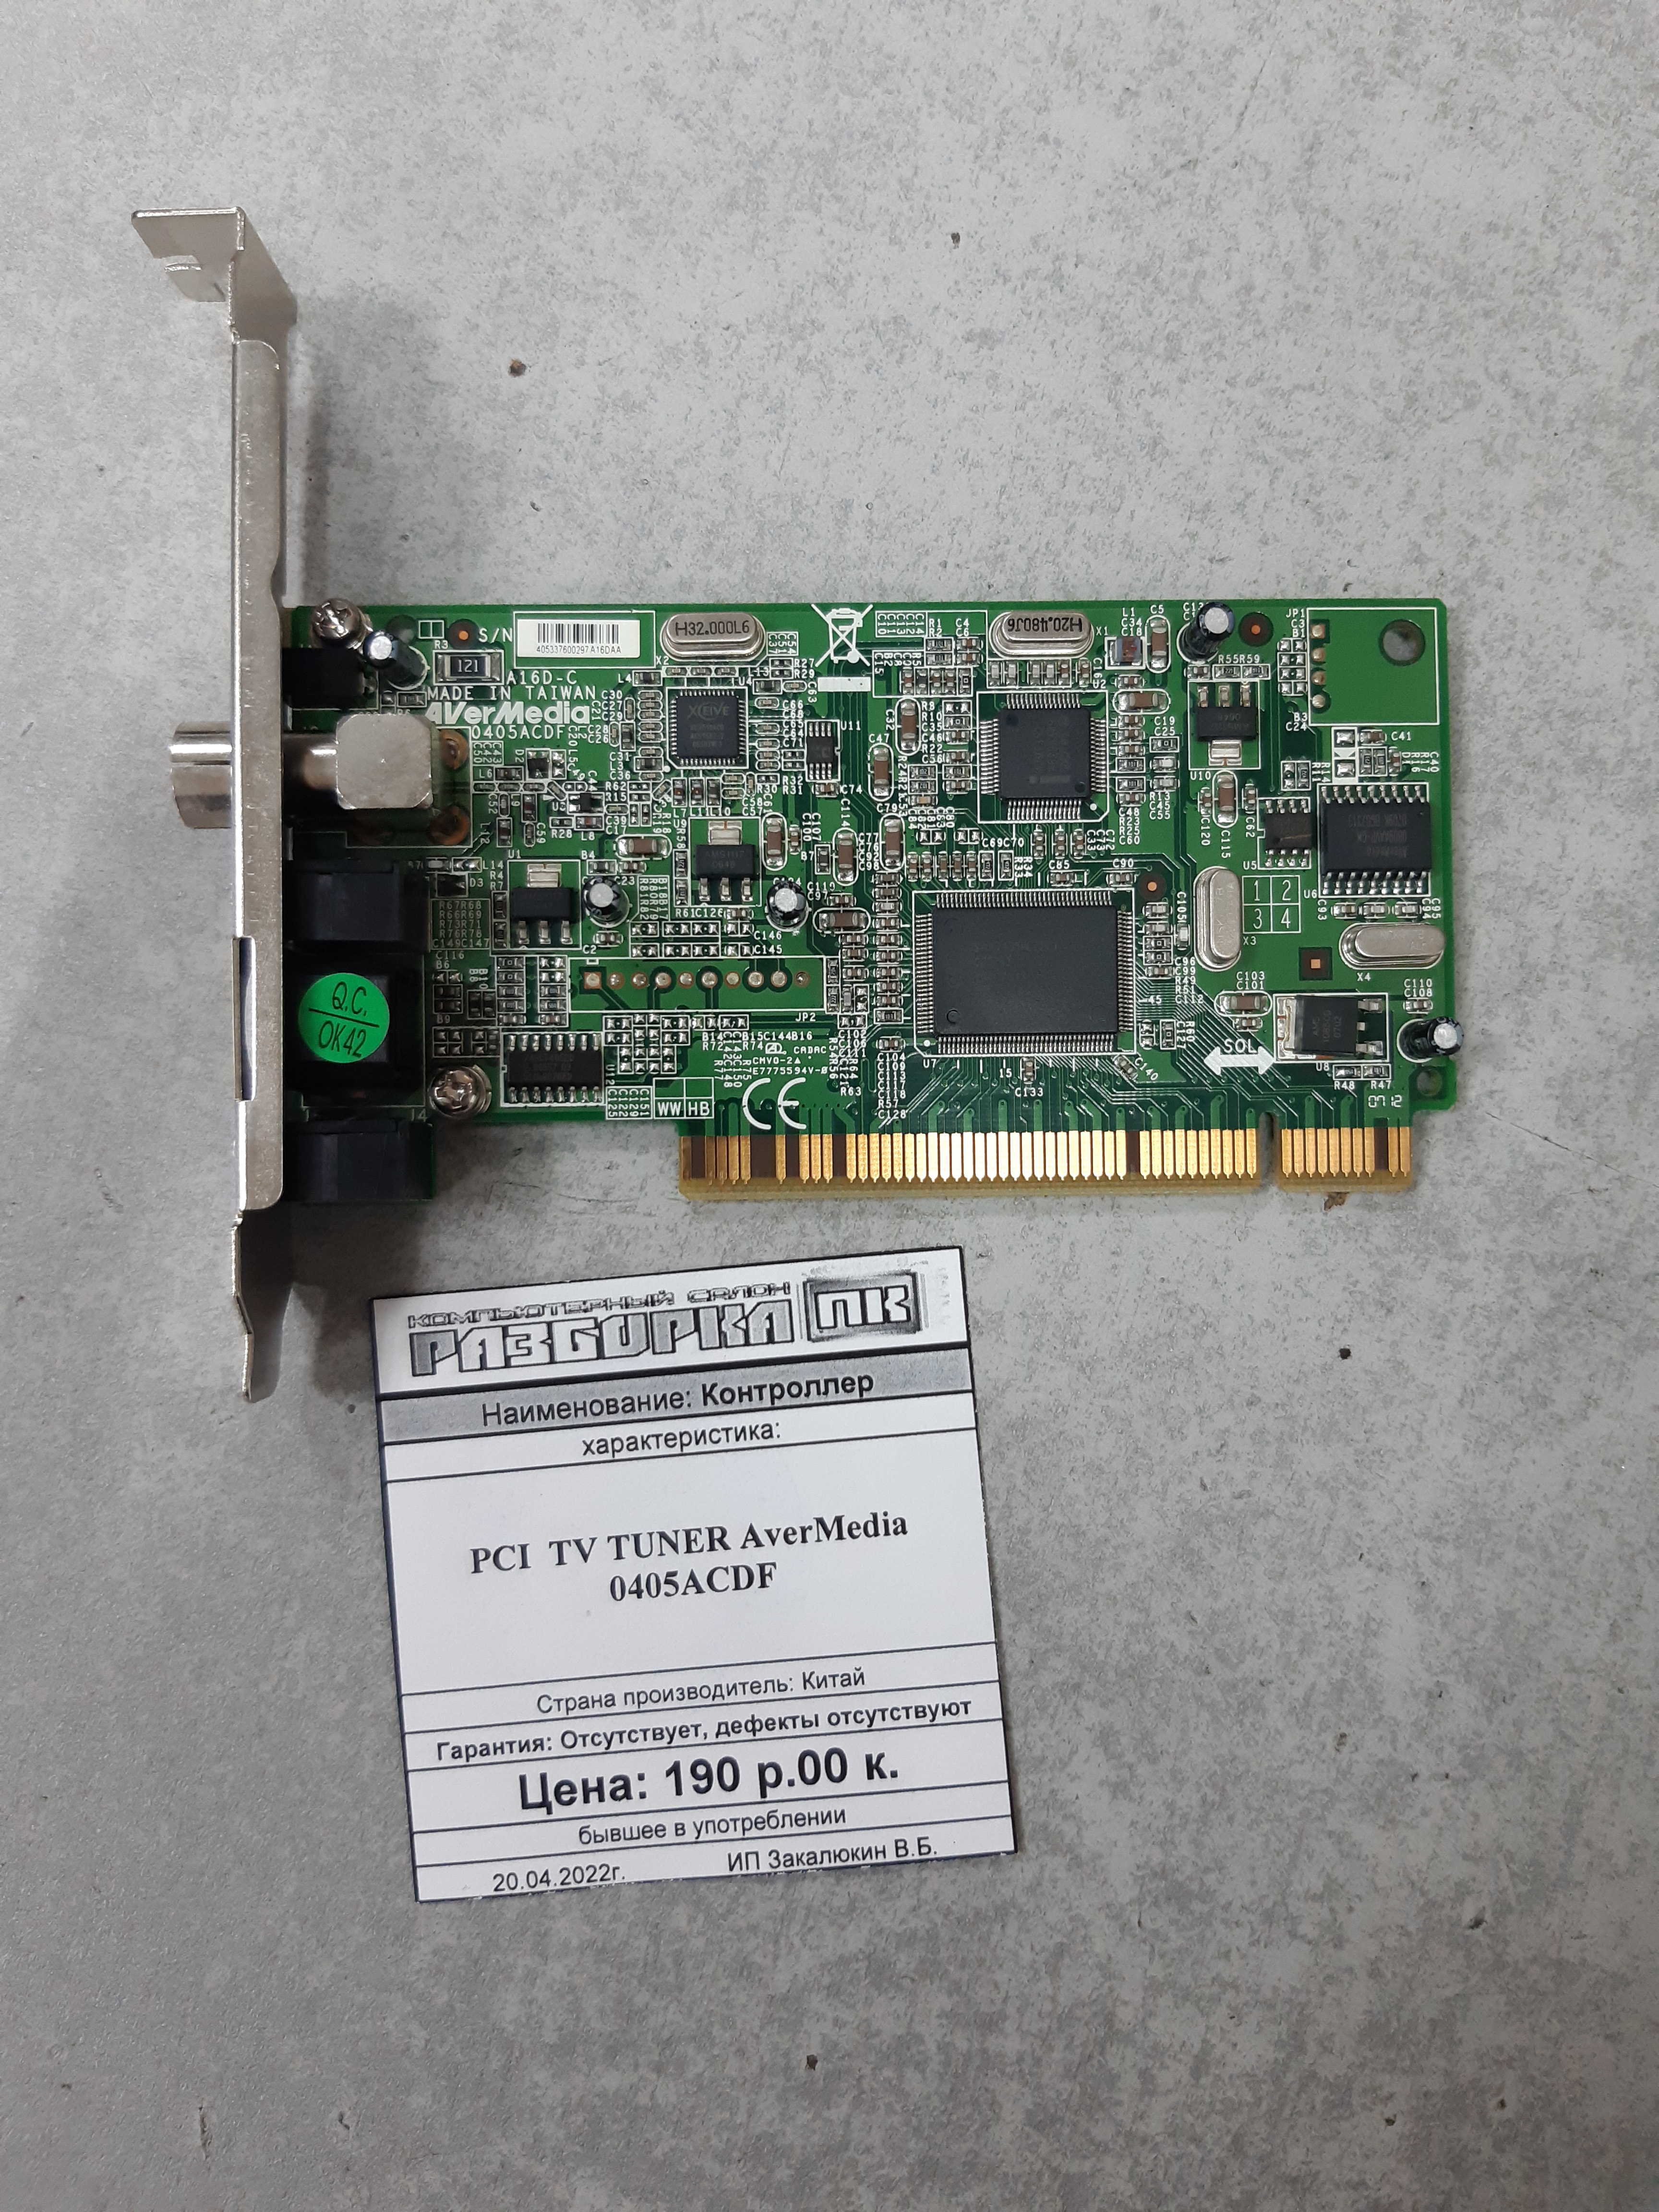 Контроллер PCI TV TUNER AverMedia 0405ACDF